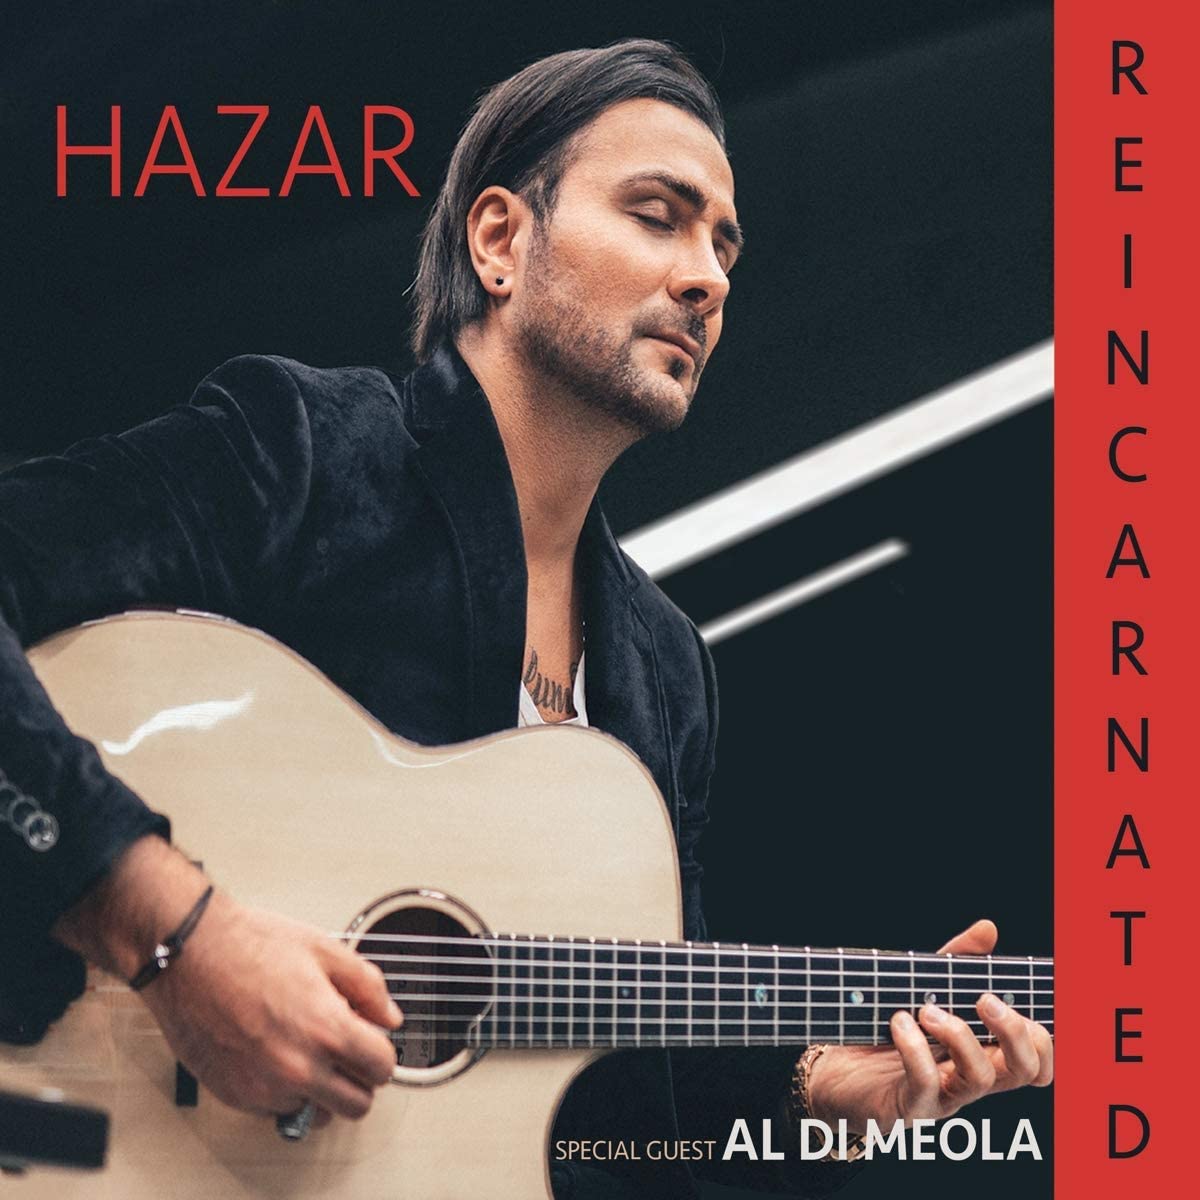 HAZAR (ULAŞ HAZAR) - Reincarnated cover 